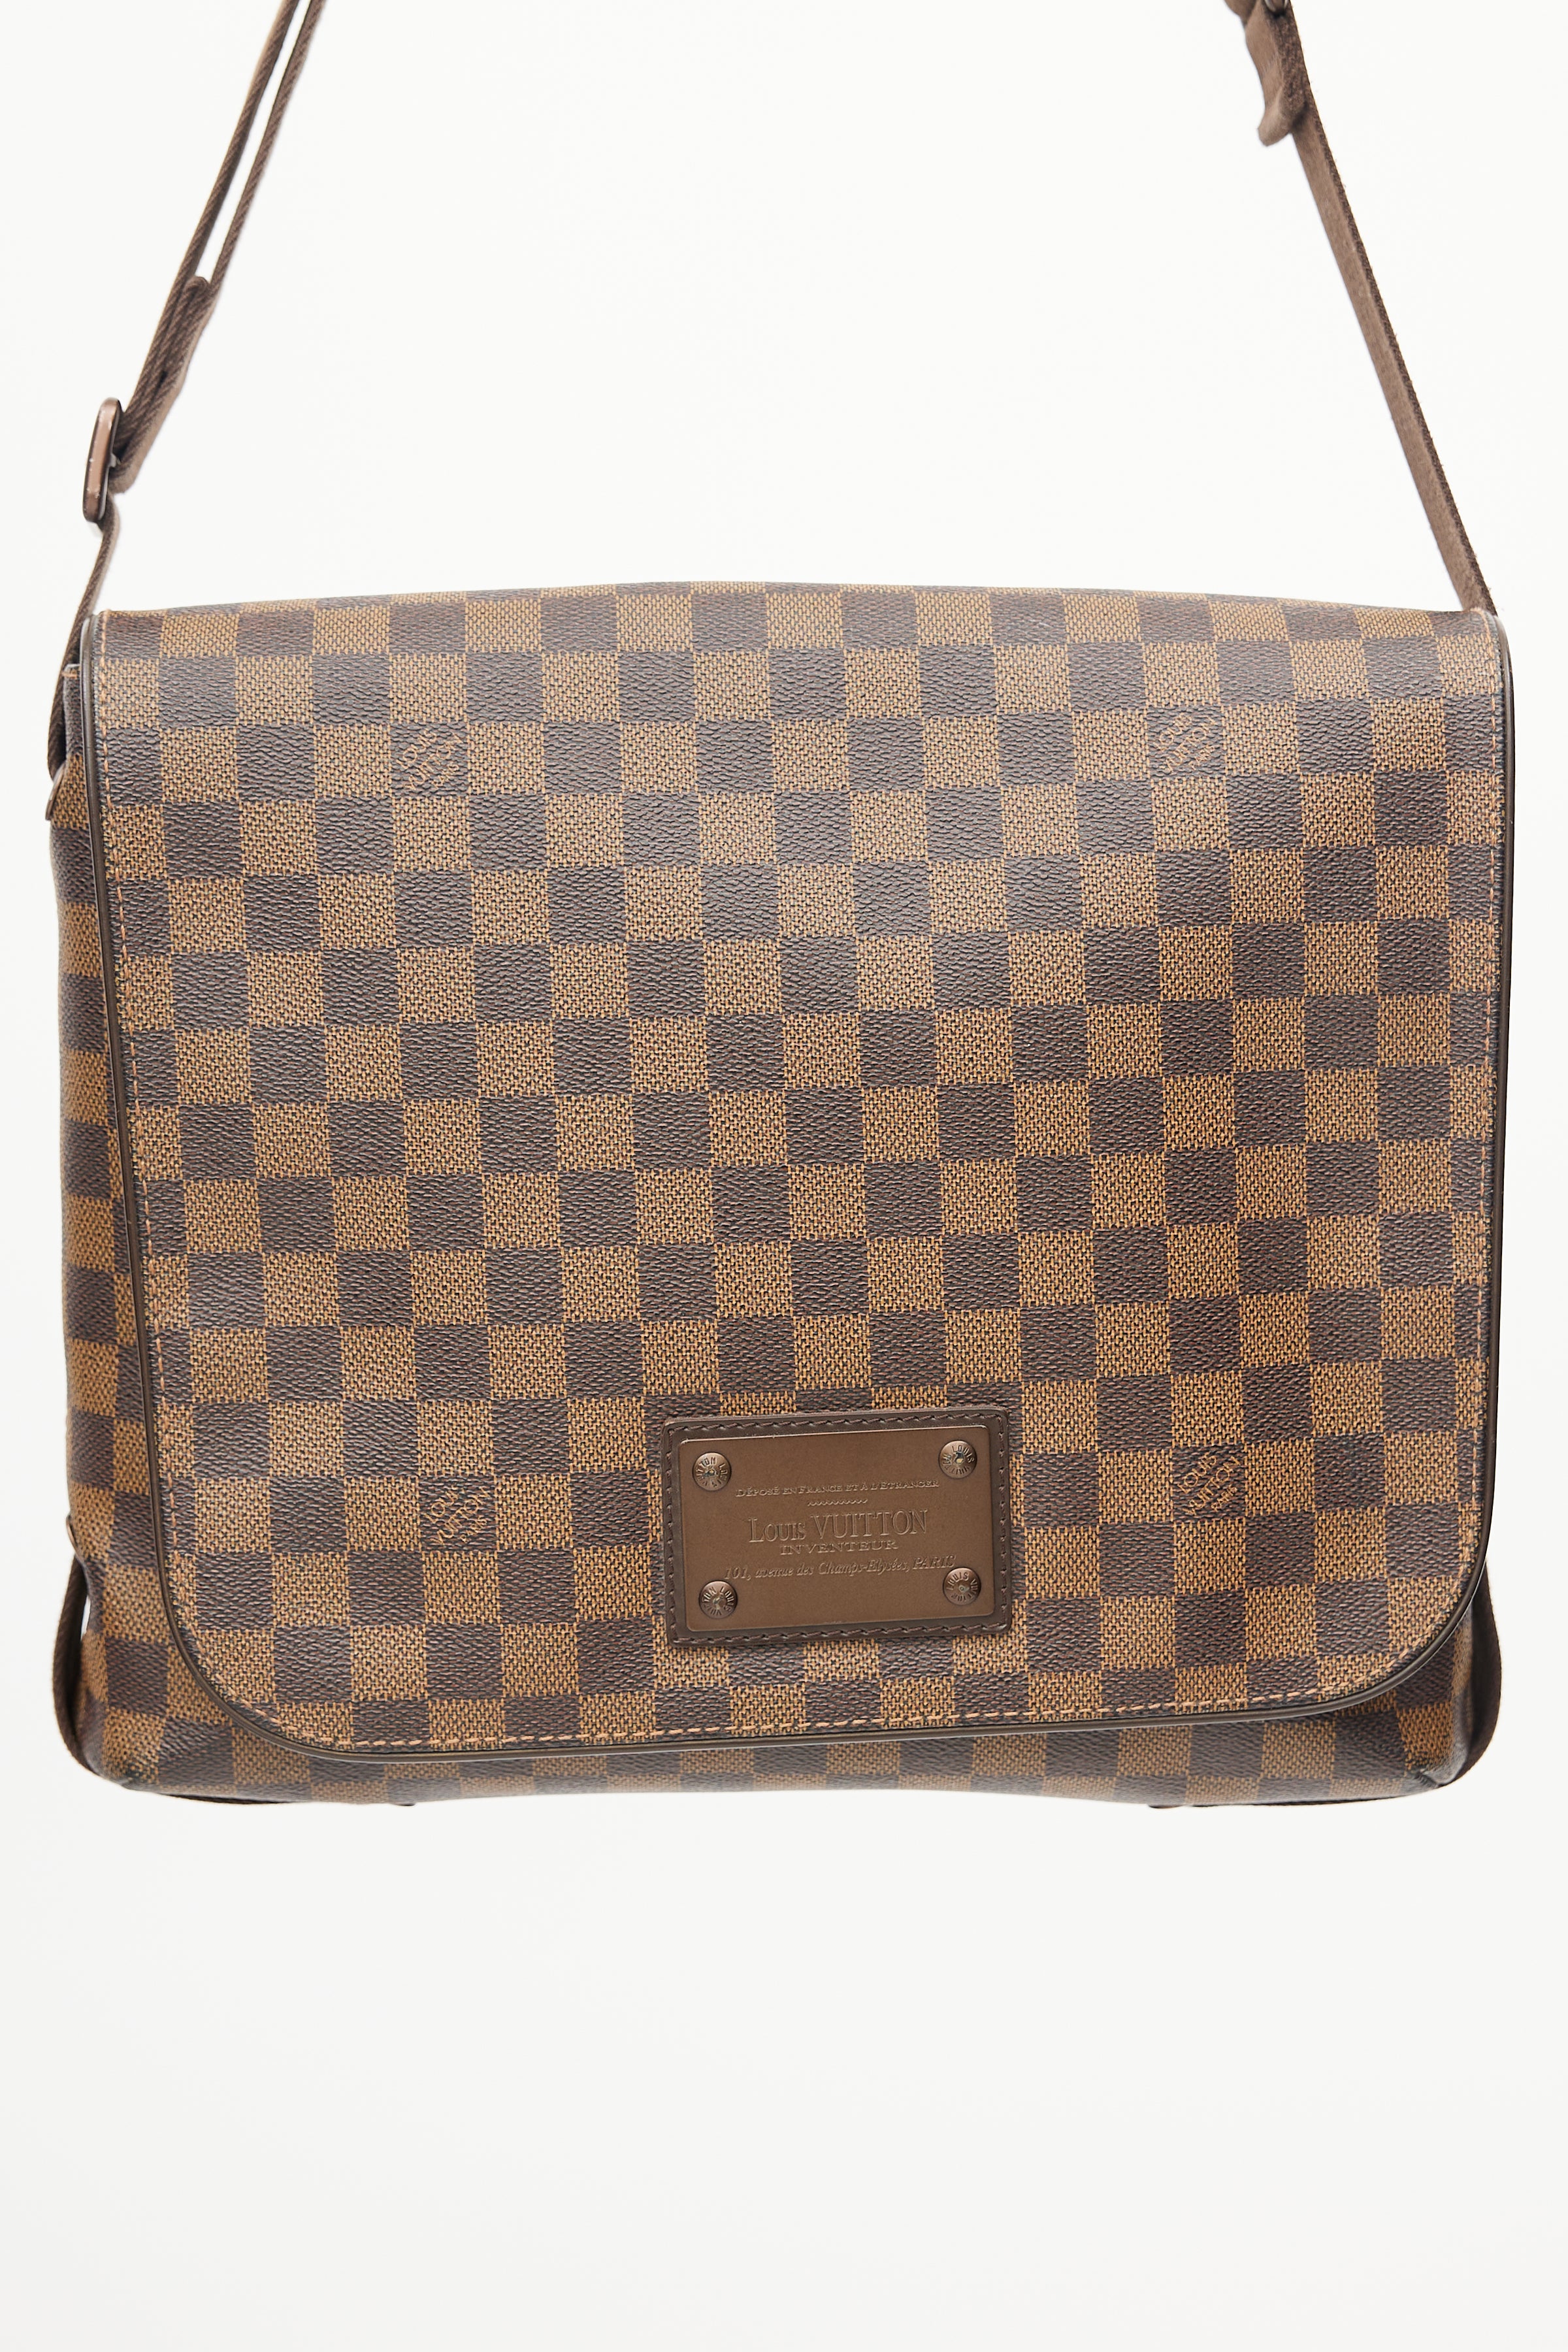 Authentic Louis Vuitton Brooklyn Gm Shoulder Bag